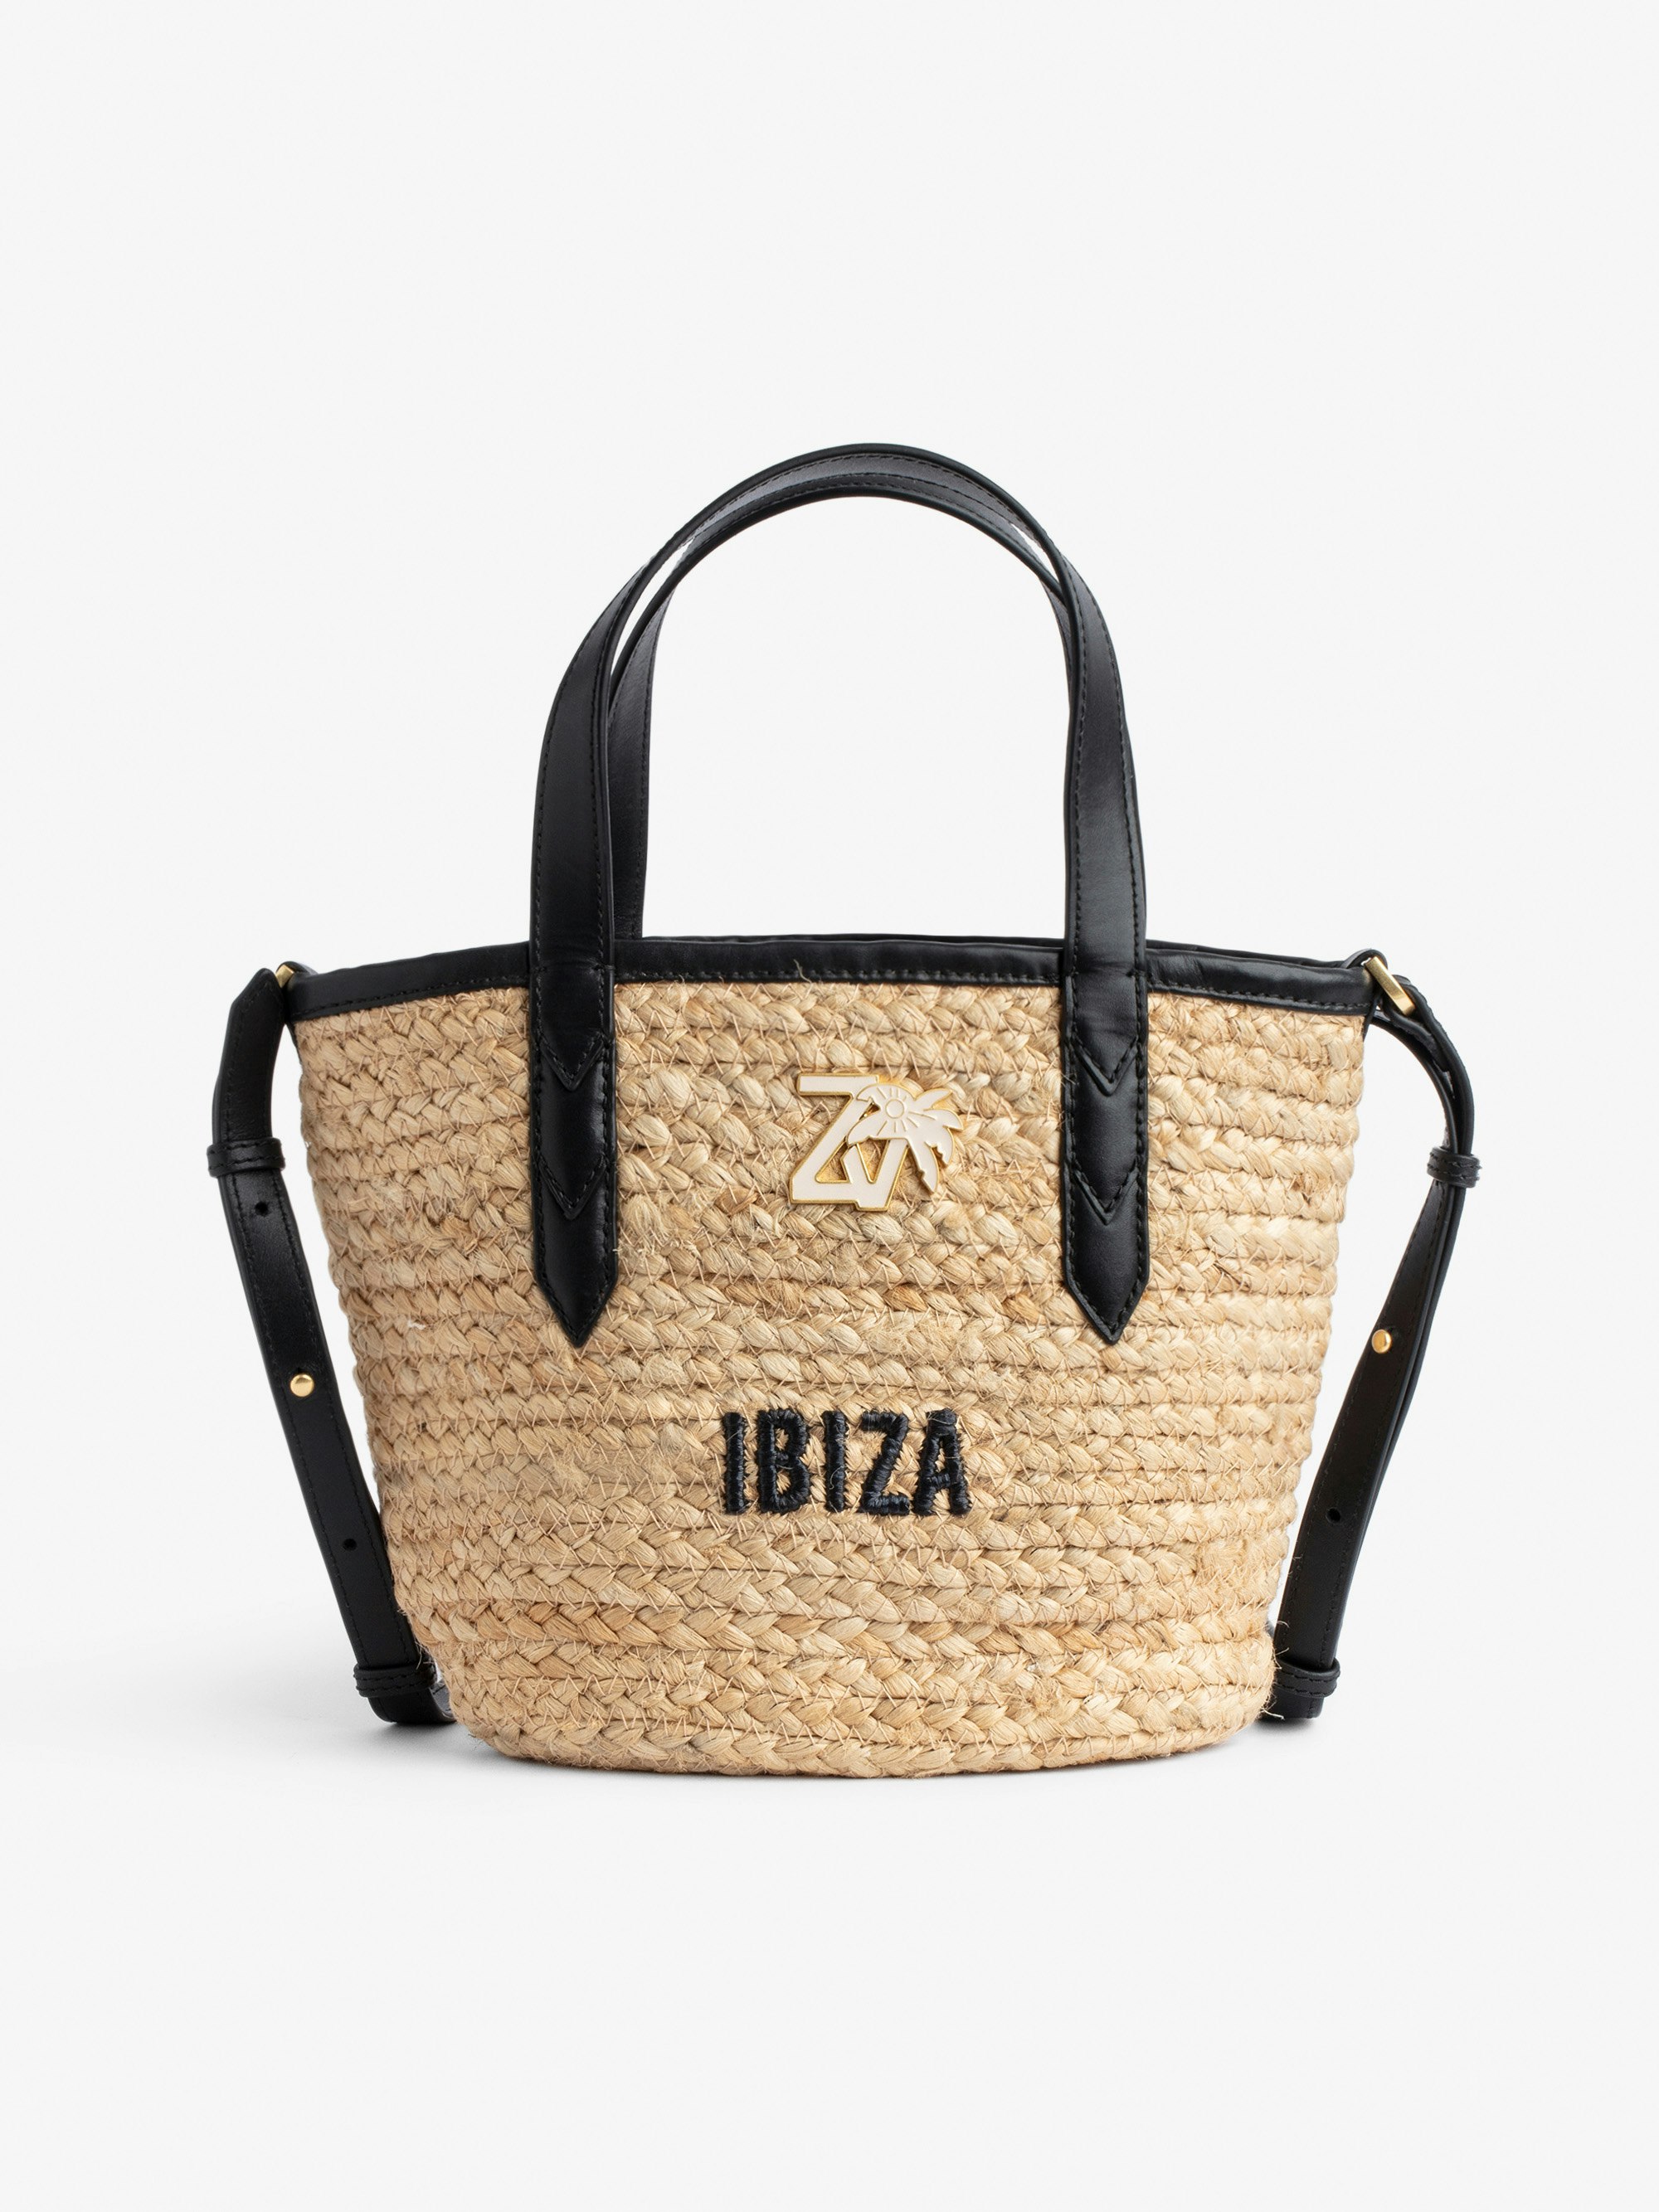 Tasche Le Baby Beach Bag - Damen-Strohtasche mit Schulterriemen aus schwarzem Leder, „Ibiza“-Stickerei und ZV-Charm